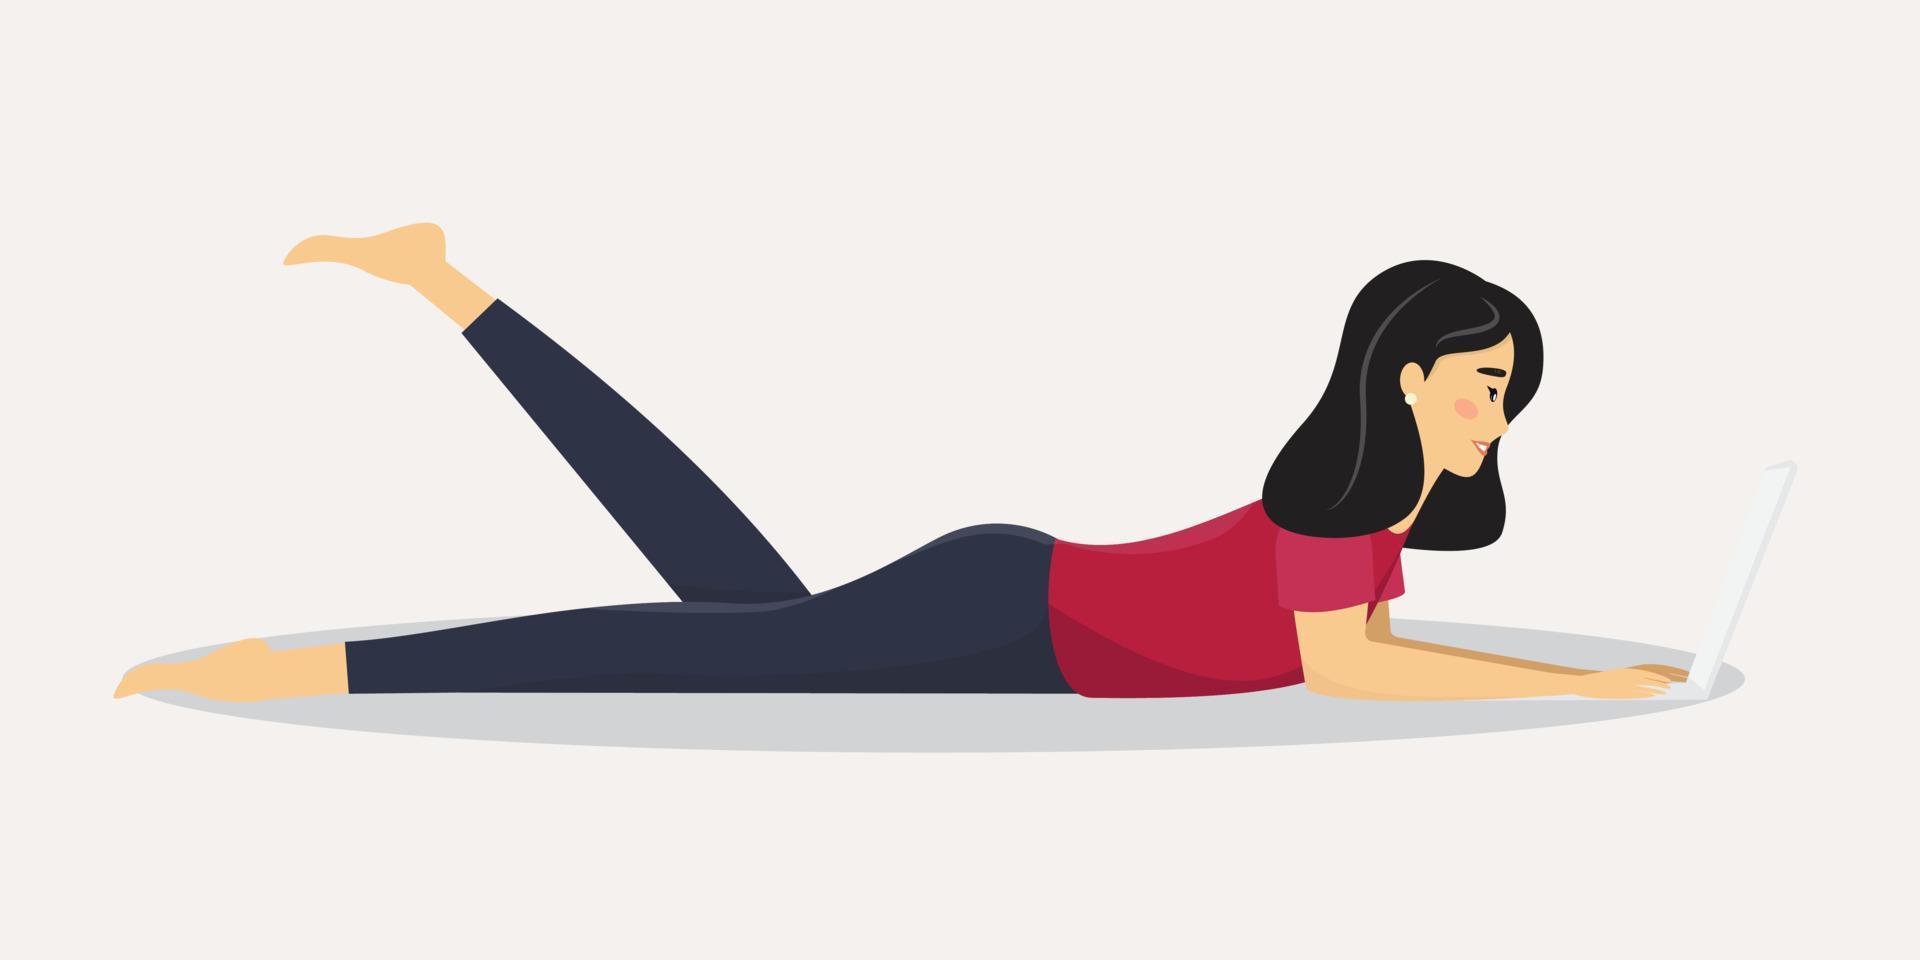 Frau liegt auf dem Boden und tippt etwas auf dem Laptop. junge weibliche Figur, die auf dem Boden liegt und einen Laptop benutzt. vektor